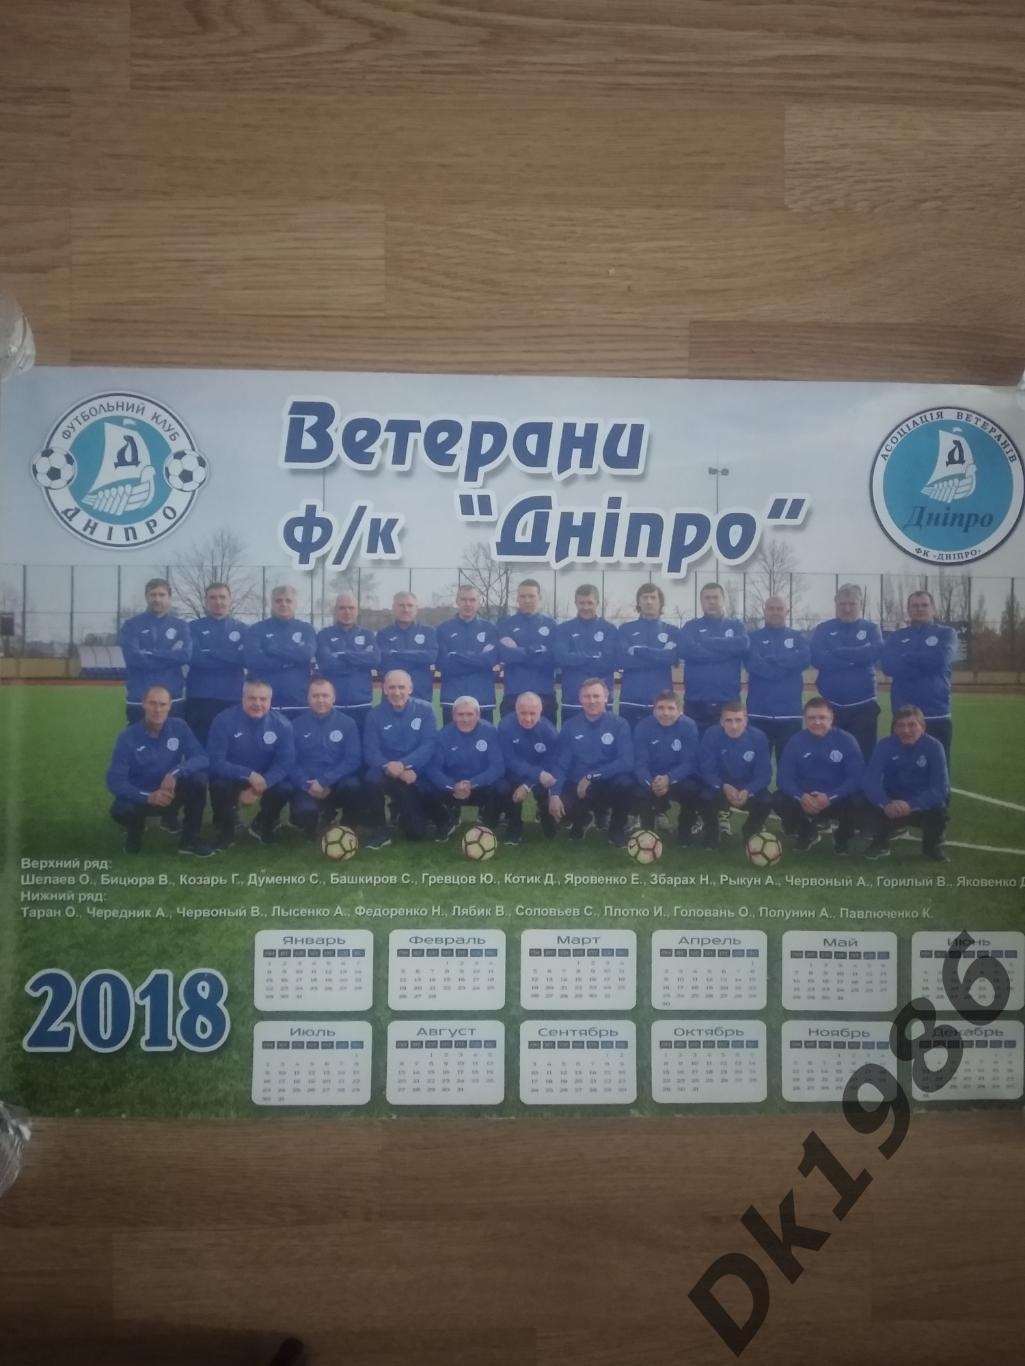 Календар настінний 2018 рік ФК Дніпро (ветерани)